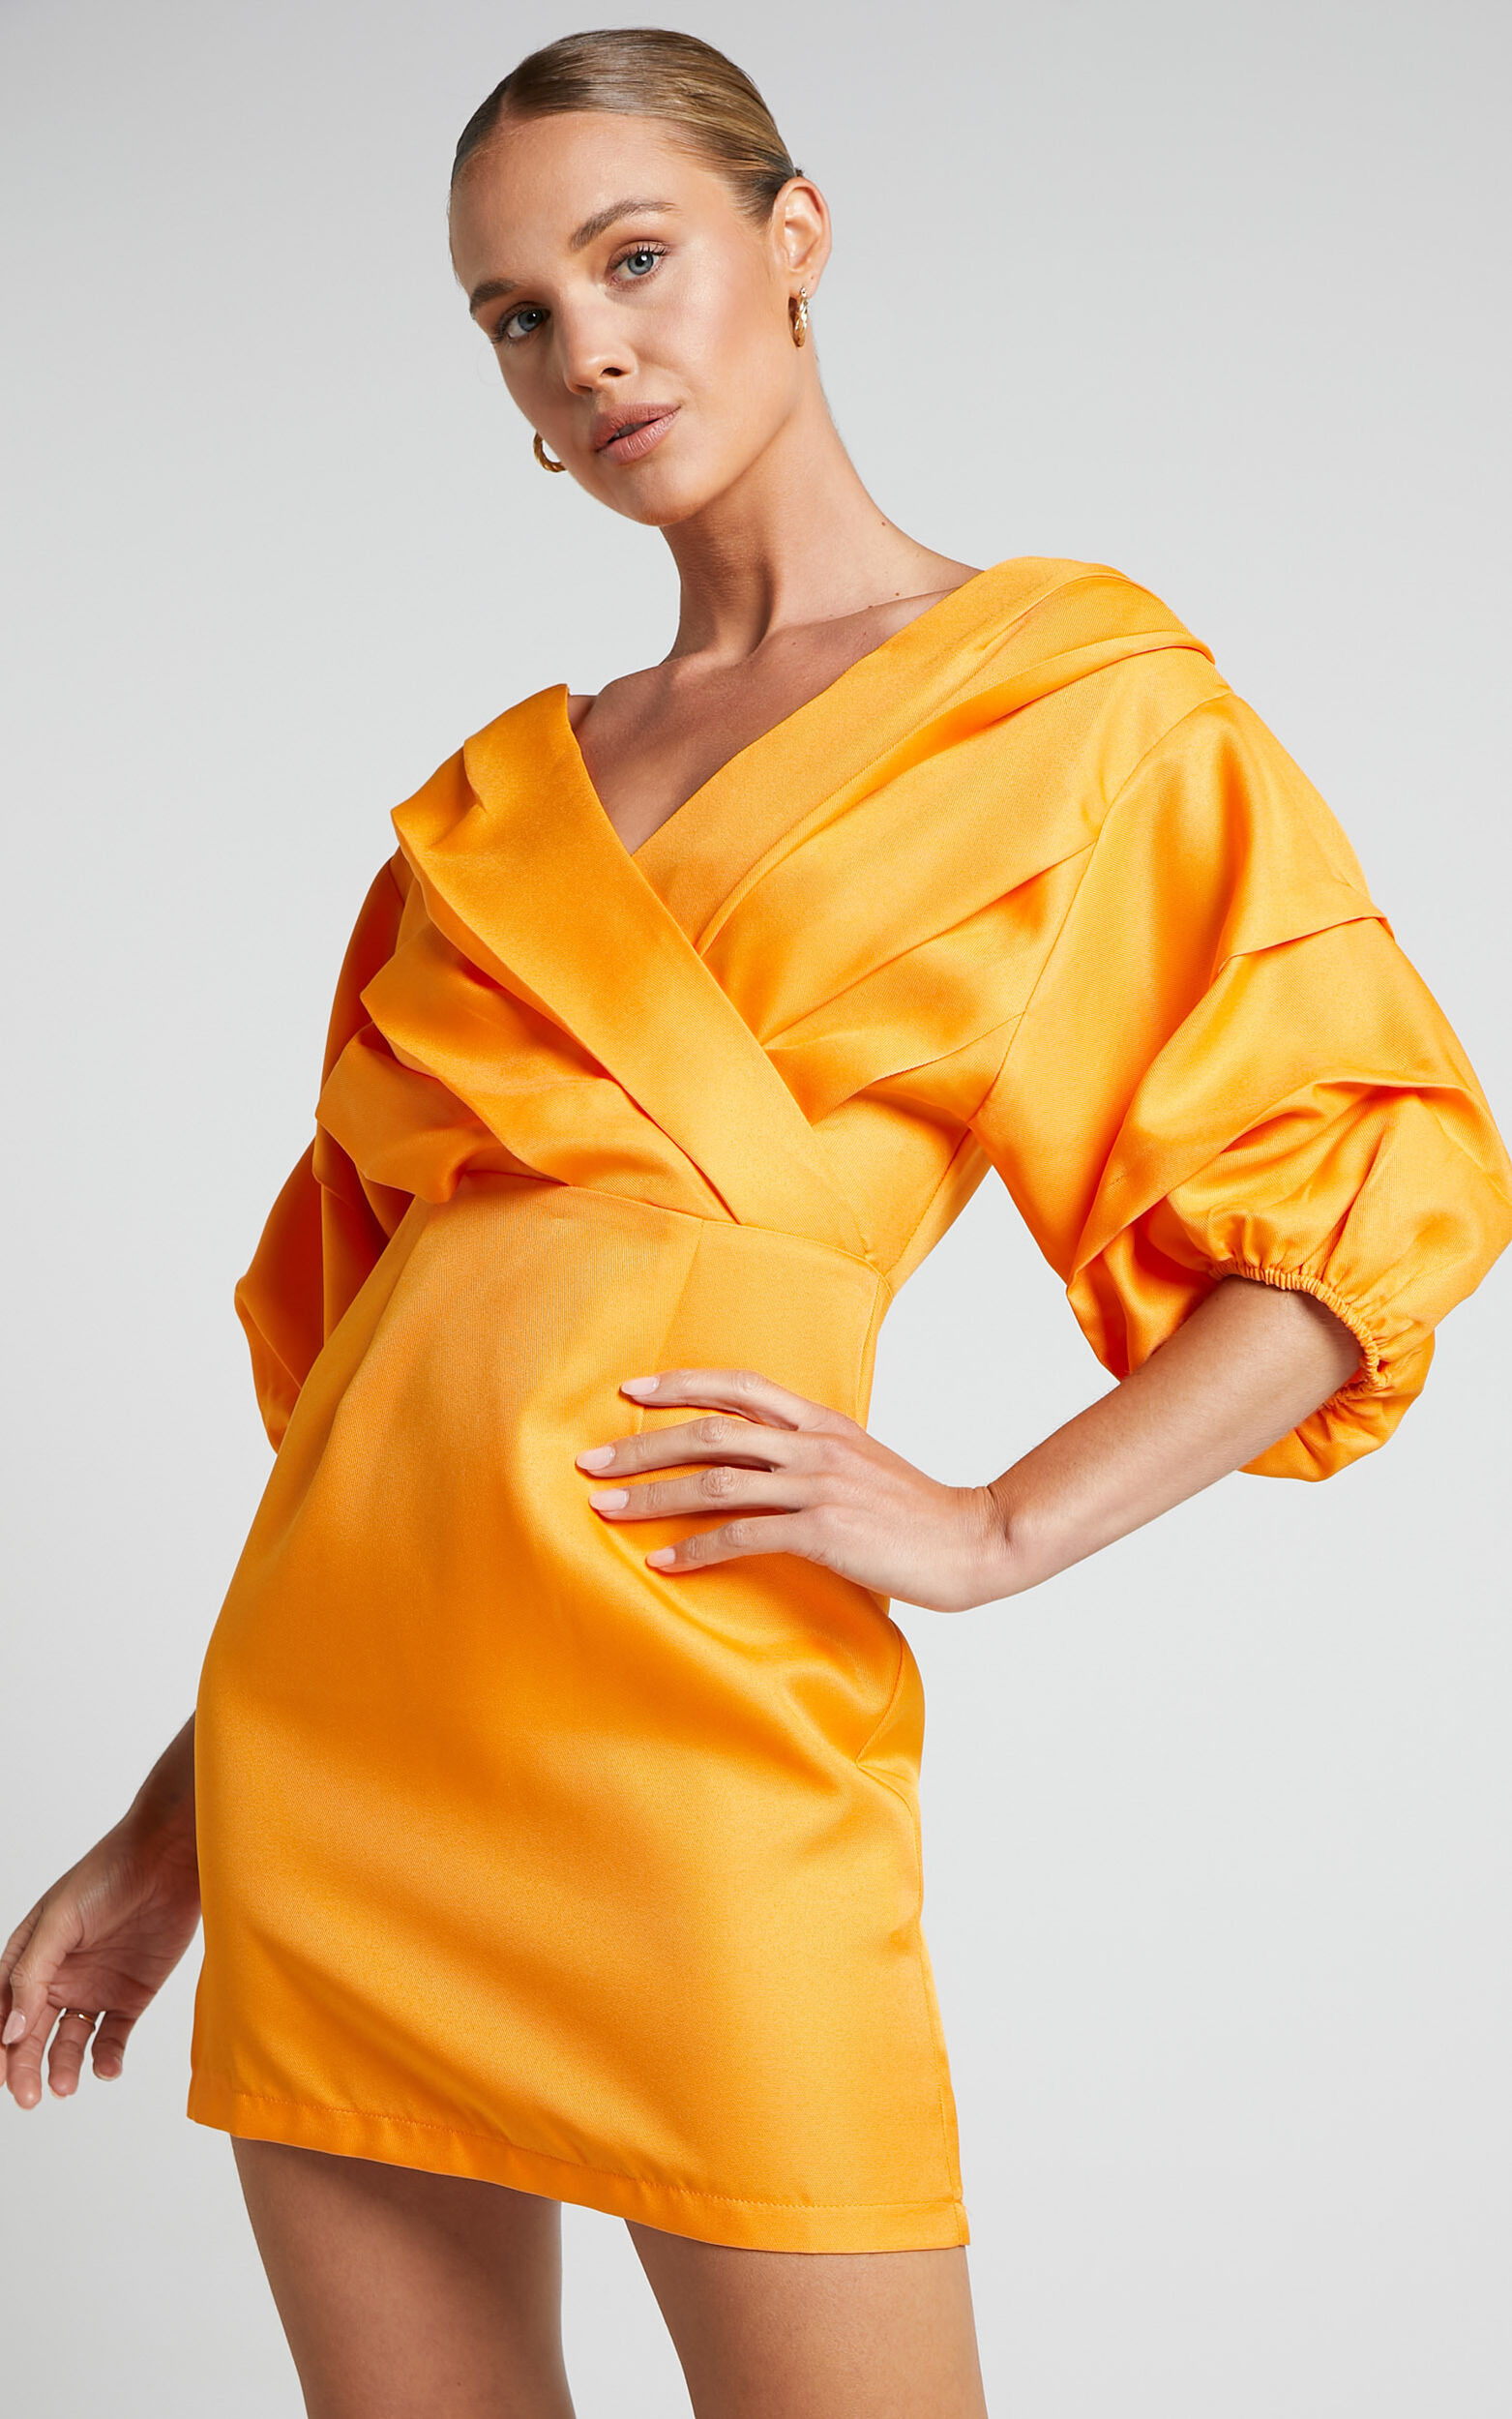 Anastasija Mini Dress - Off Shoulder V Neck Dress in Mango - 06, ORG1